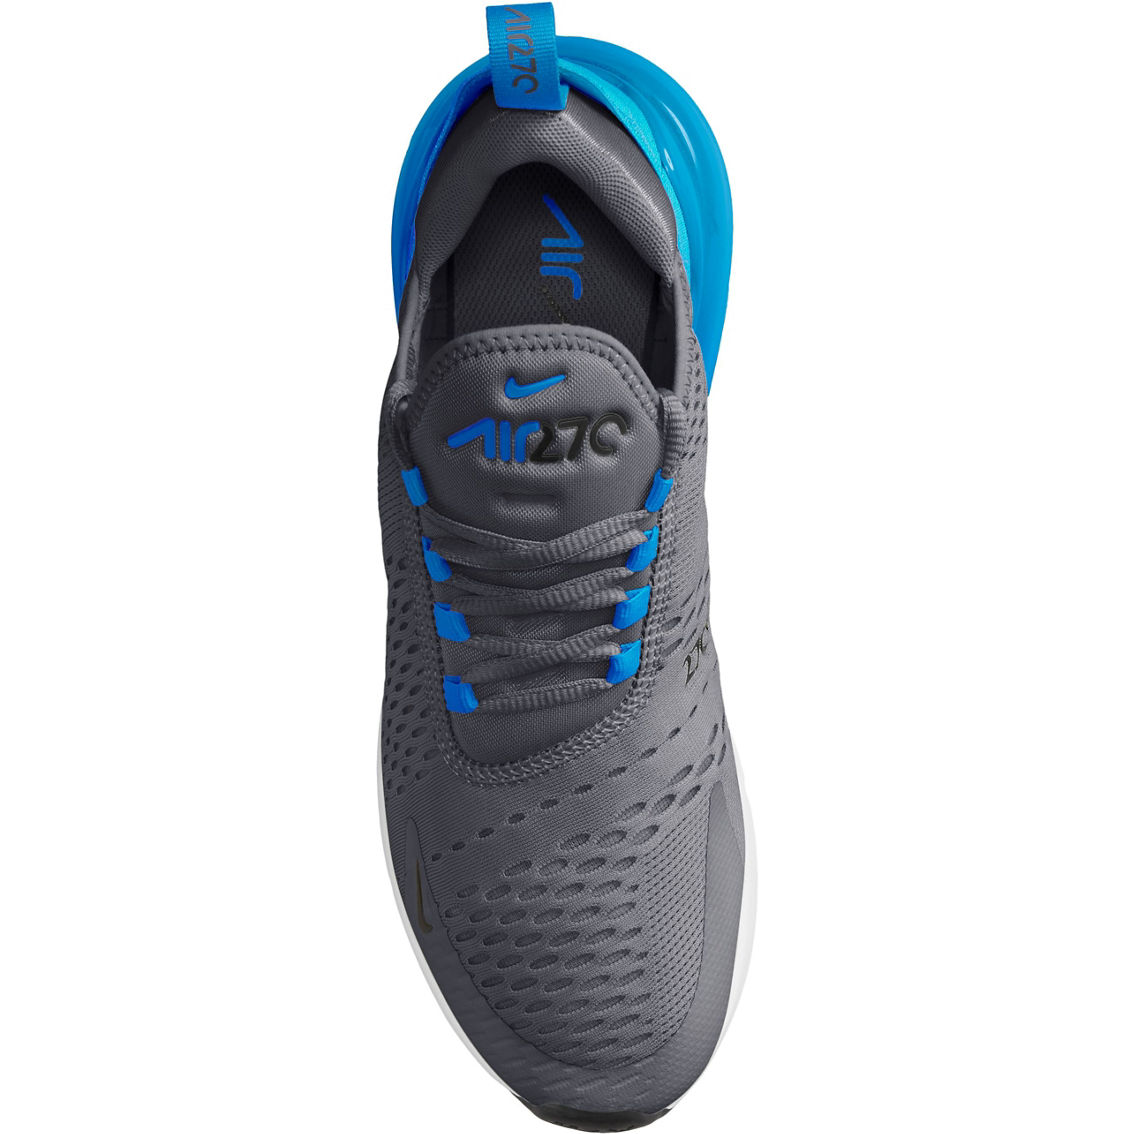 Nike Men's Air Max 270 Sneakers - Image 3 of 4